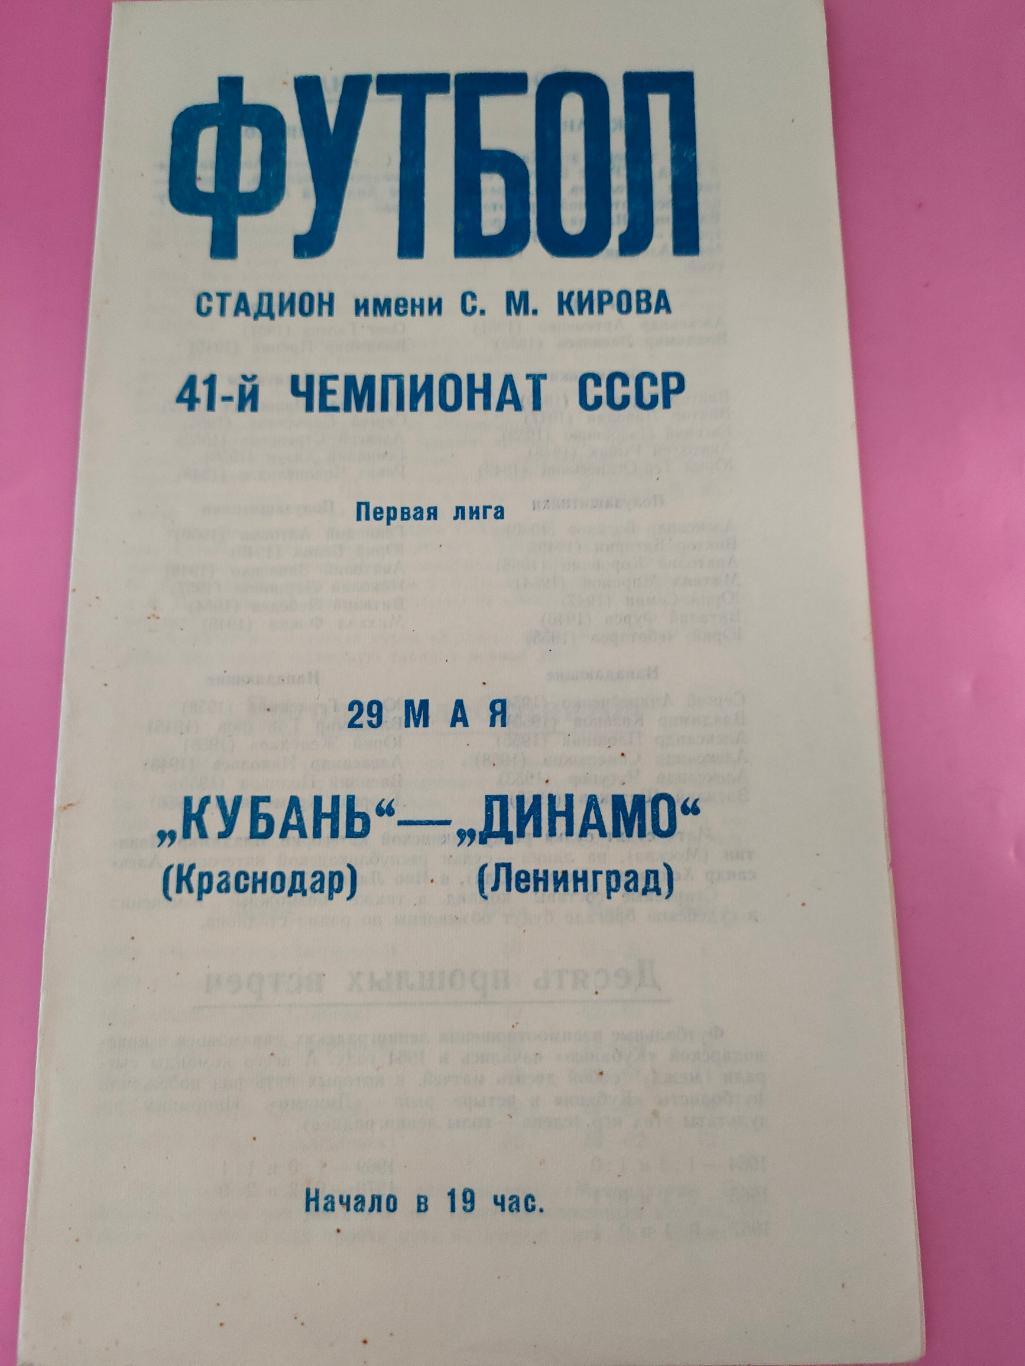 29.05.1978 - Динамо (Ленинград) - Кубань (Краснодар)